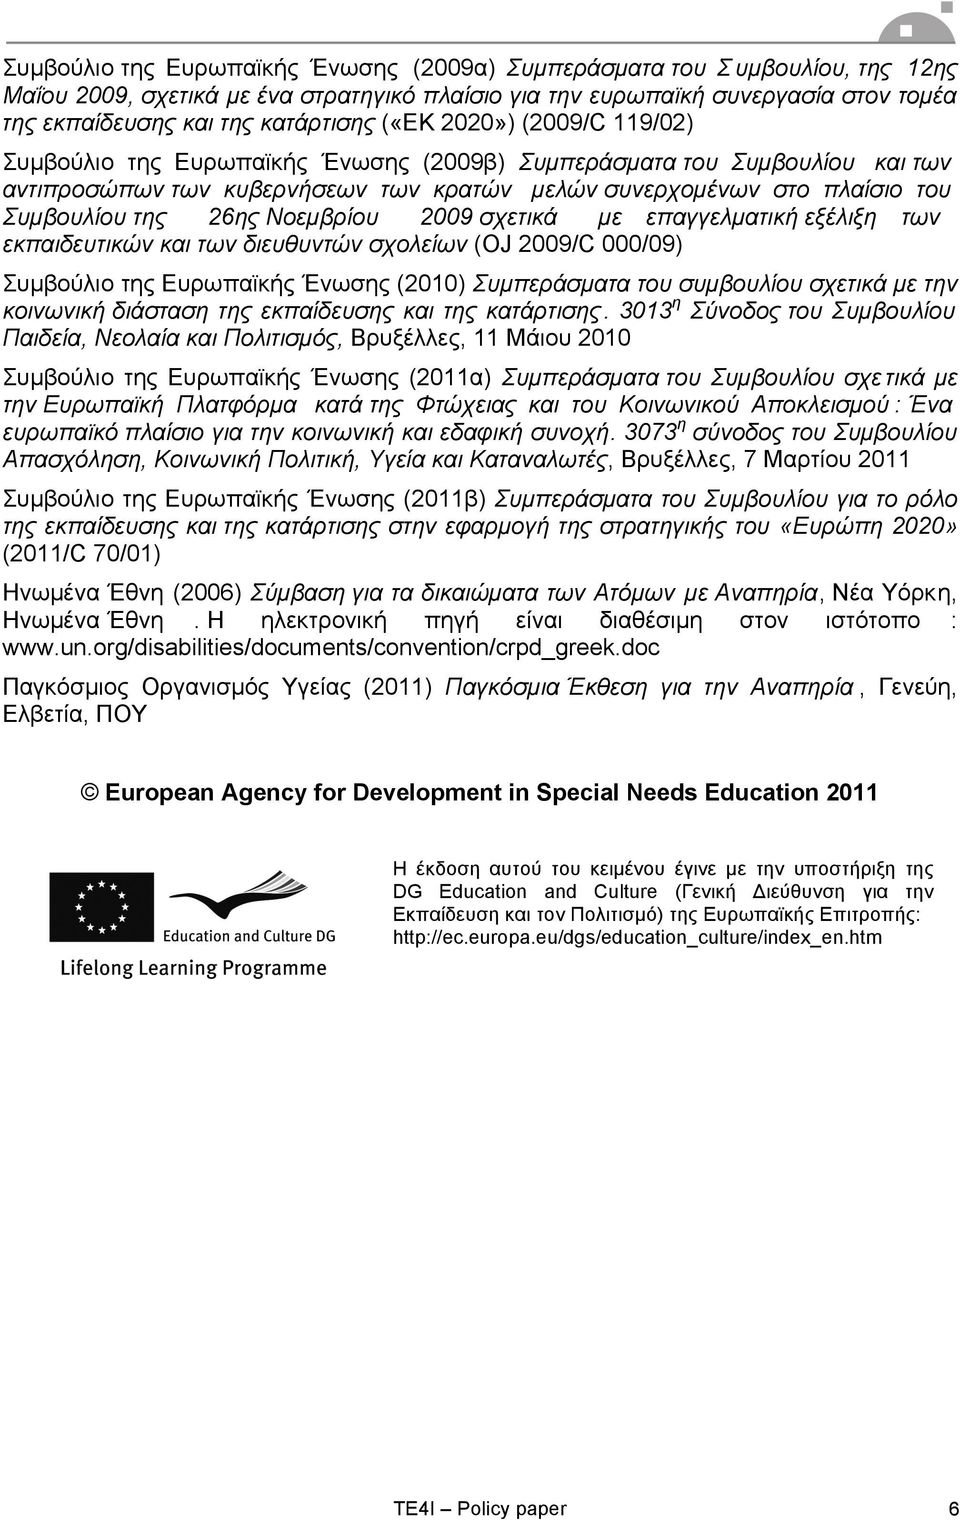 Νοεµβρίου 2009 σχετικά µε επαγγελµατική εξέλιξη των εκπαιδευτικών και των διευθυντών σχολείων (OJ 2009/C 000/09) Συµβούλιο της Ευρωπαϊκής Ένωσης (2010) Συµπεράσµατα του συµβουλίου σχετικά µε την